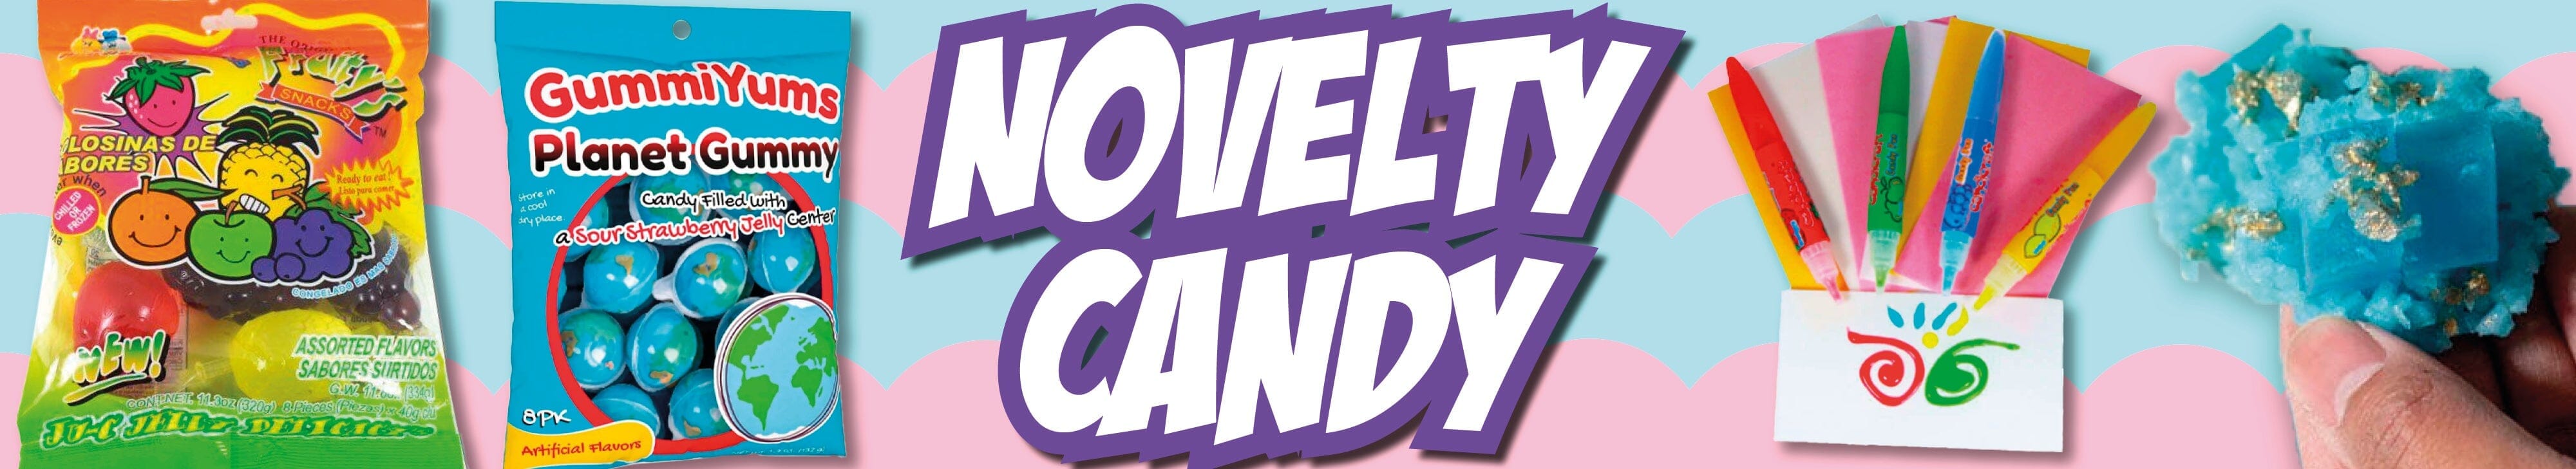 Novelty Candy